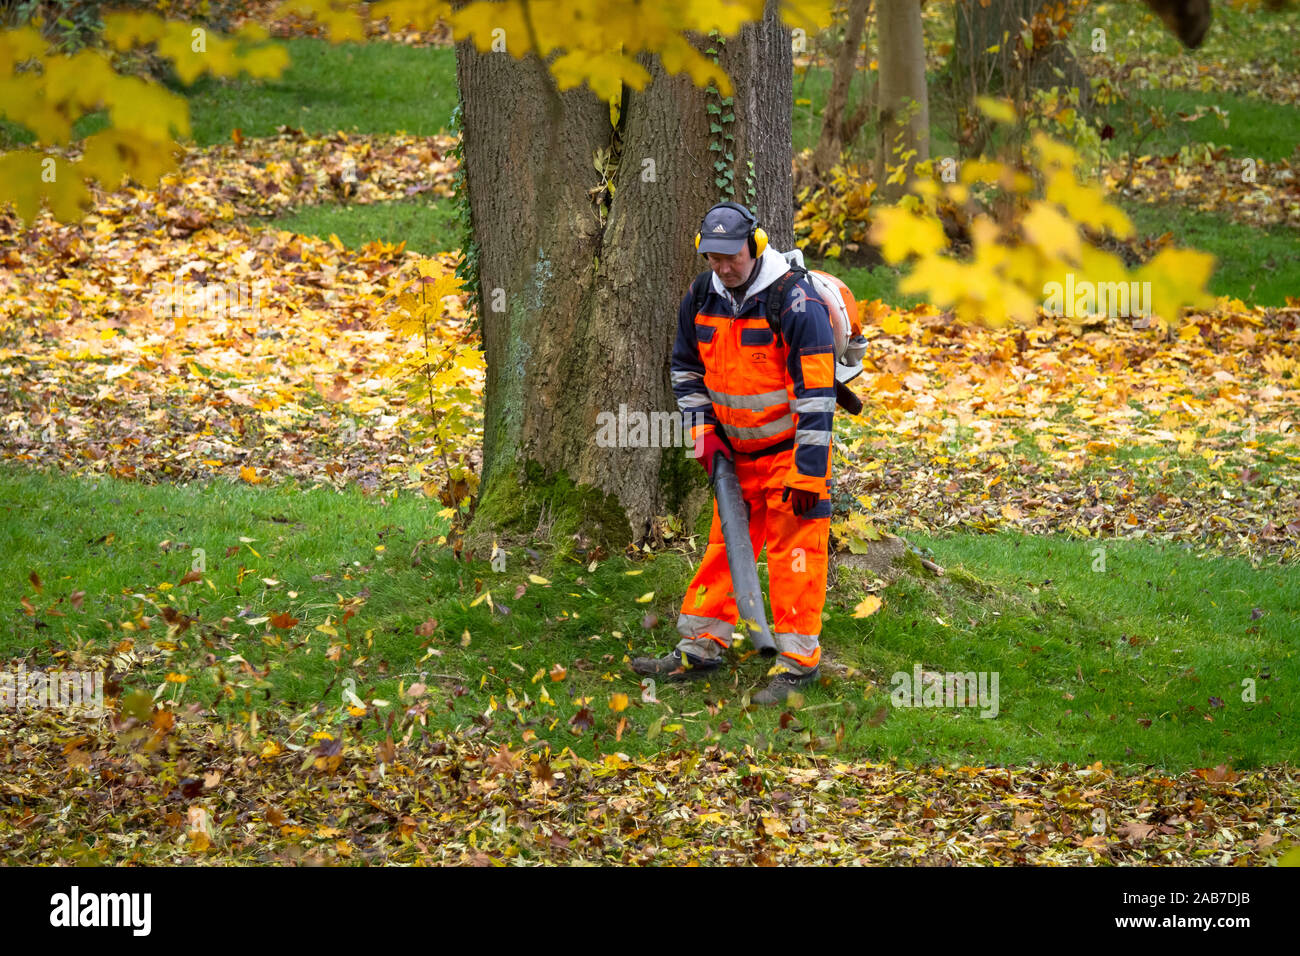 Arbeitnehmer mit einem Rucksack Laubbläser in einem öffentlichen Park in der Stadt Wetter, Nordrhein-Westfalen, Deutschland. Arbeiter mit einem Laubblaeser in einem o Stockfoto